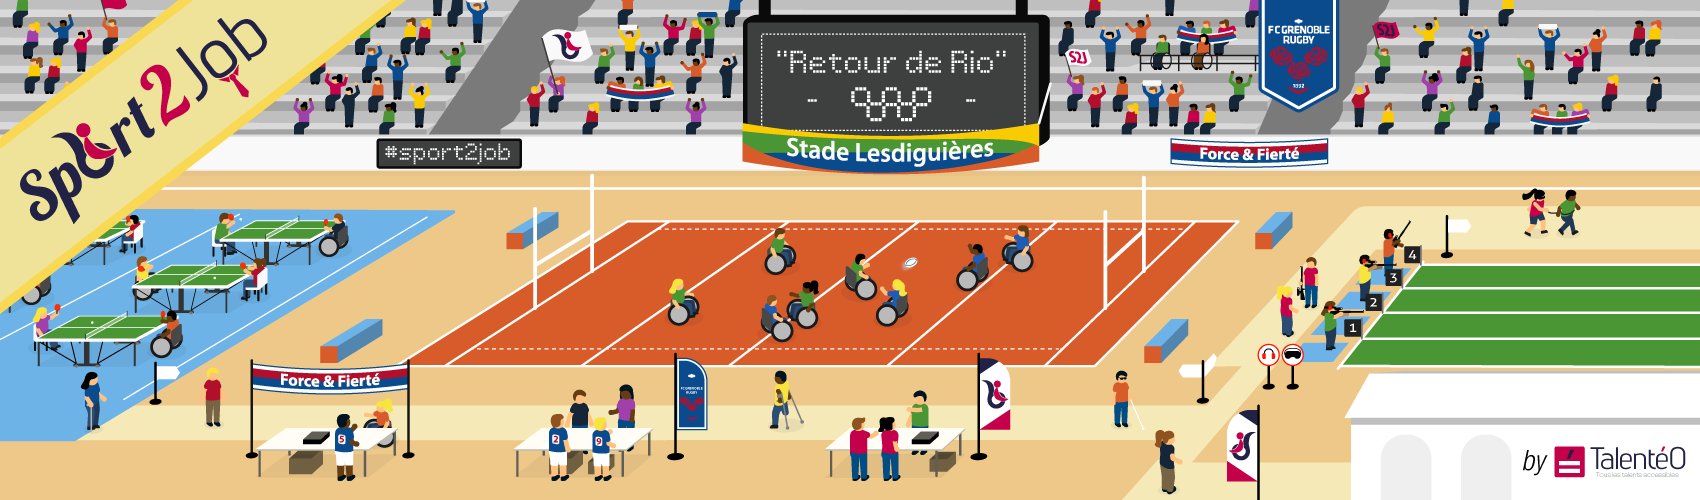 Sport2Job : Un tournoi multisport pour le retour de Rio !